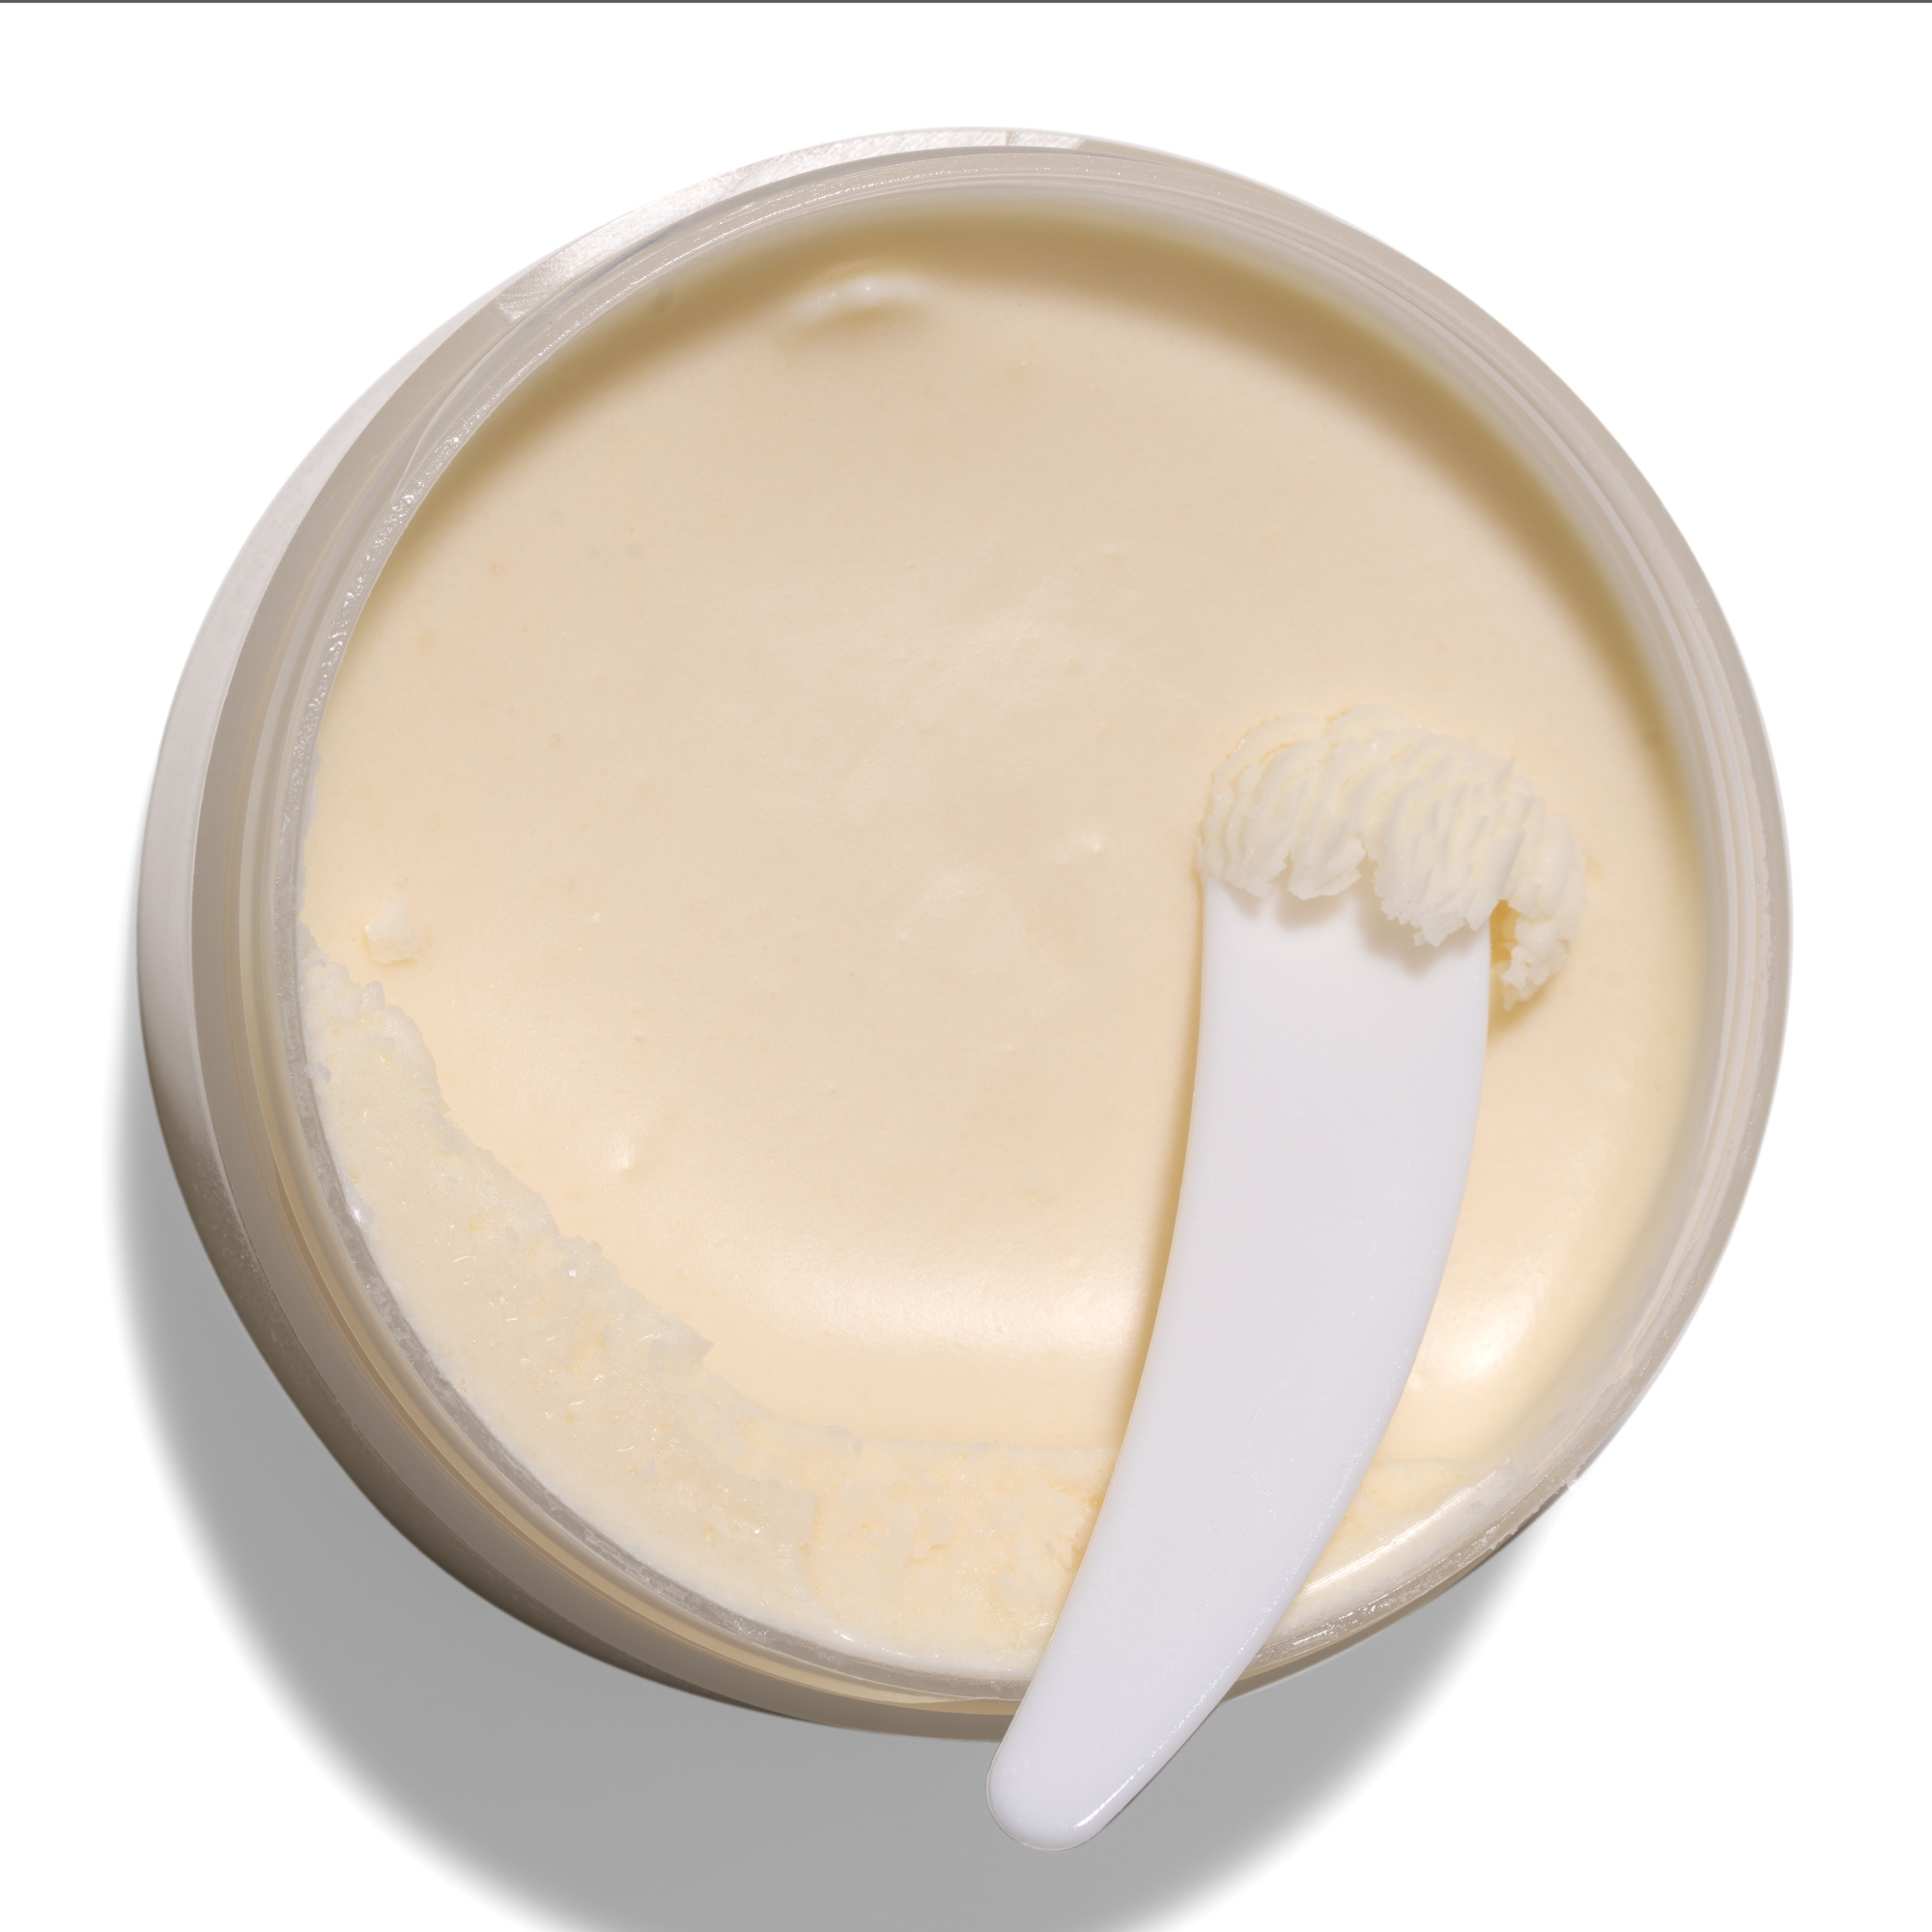 Масло для тела Velvet Butter 50г (натуральный) купить в онлайн экомаркете